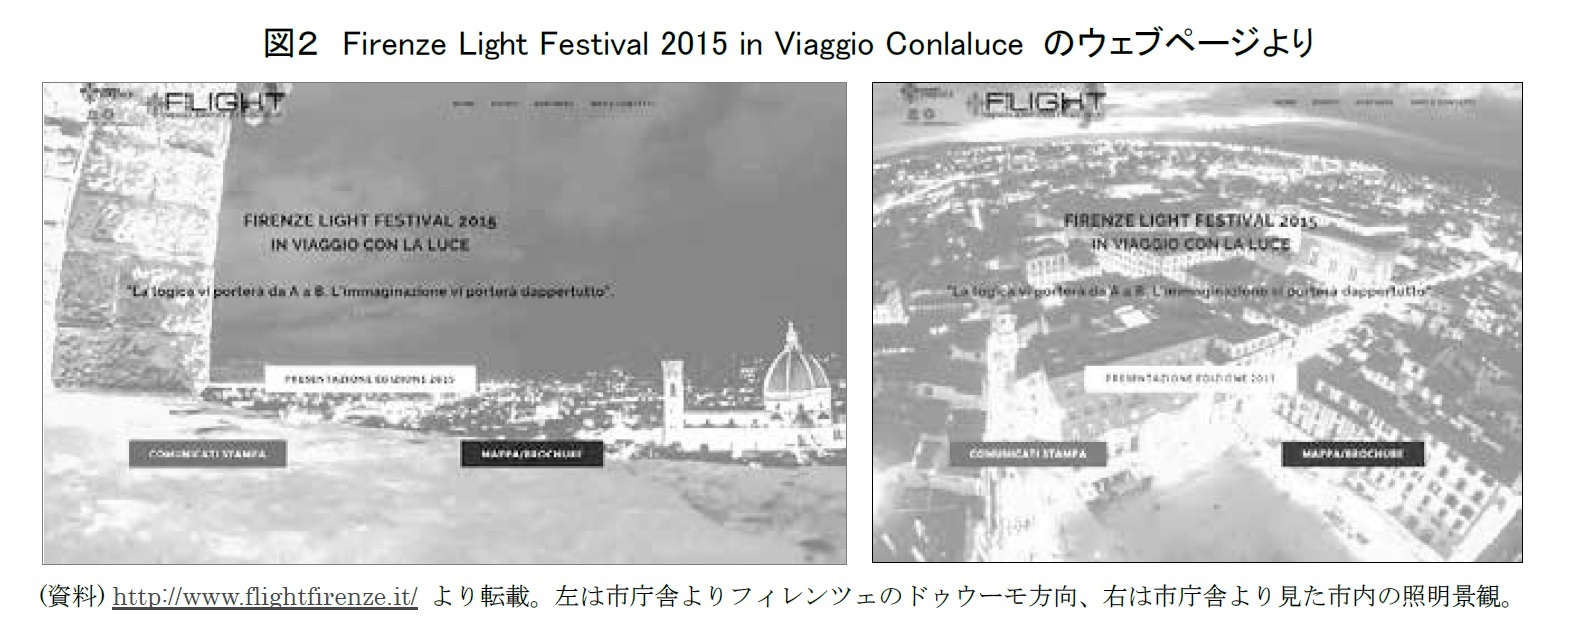 図２　Firenze Light Festival 2015 in Viaggio Conlaluce のウェブページより